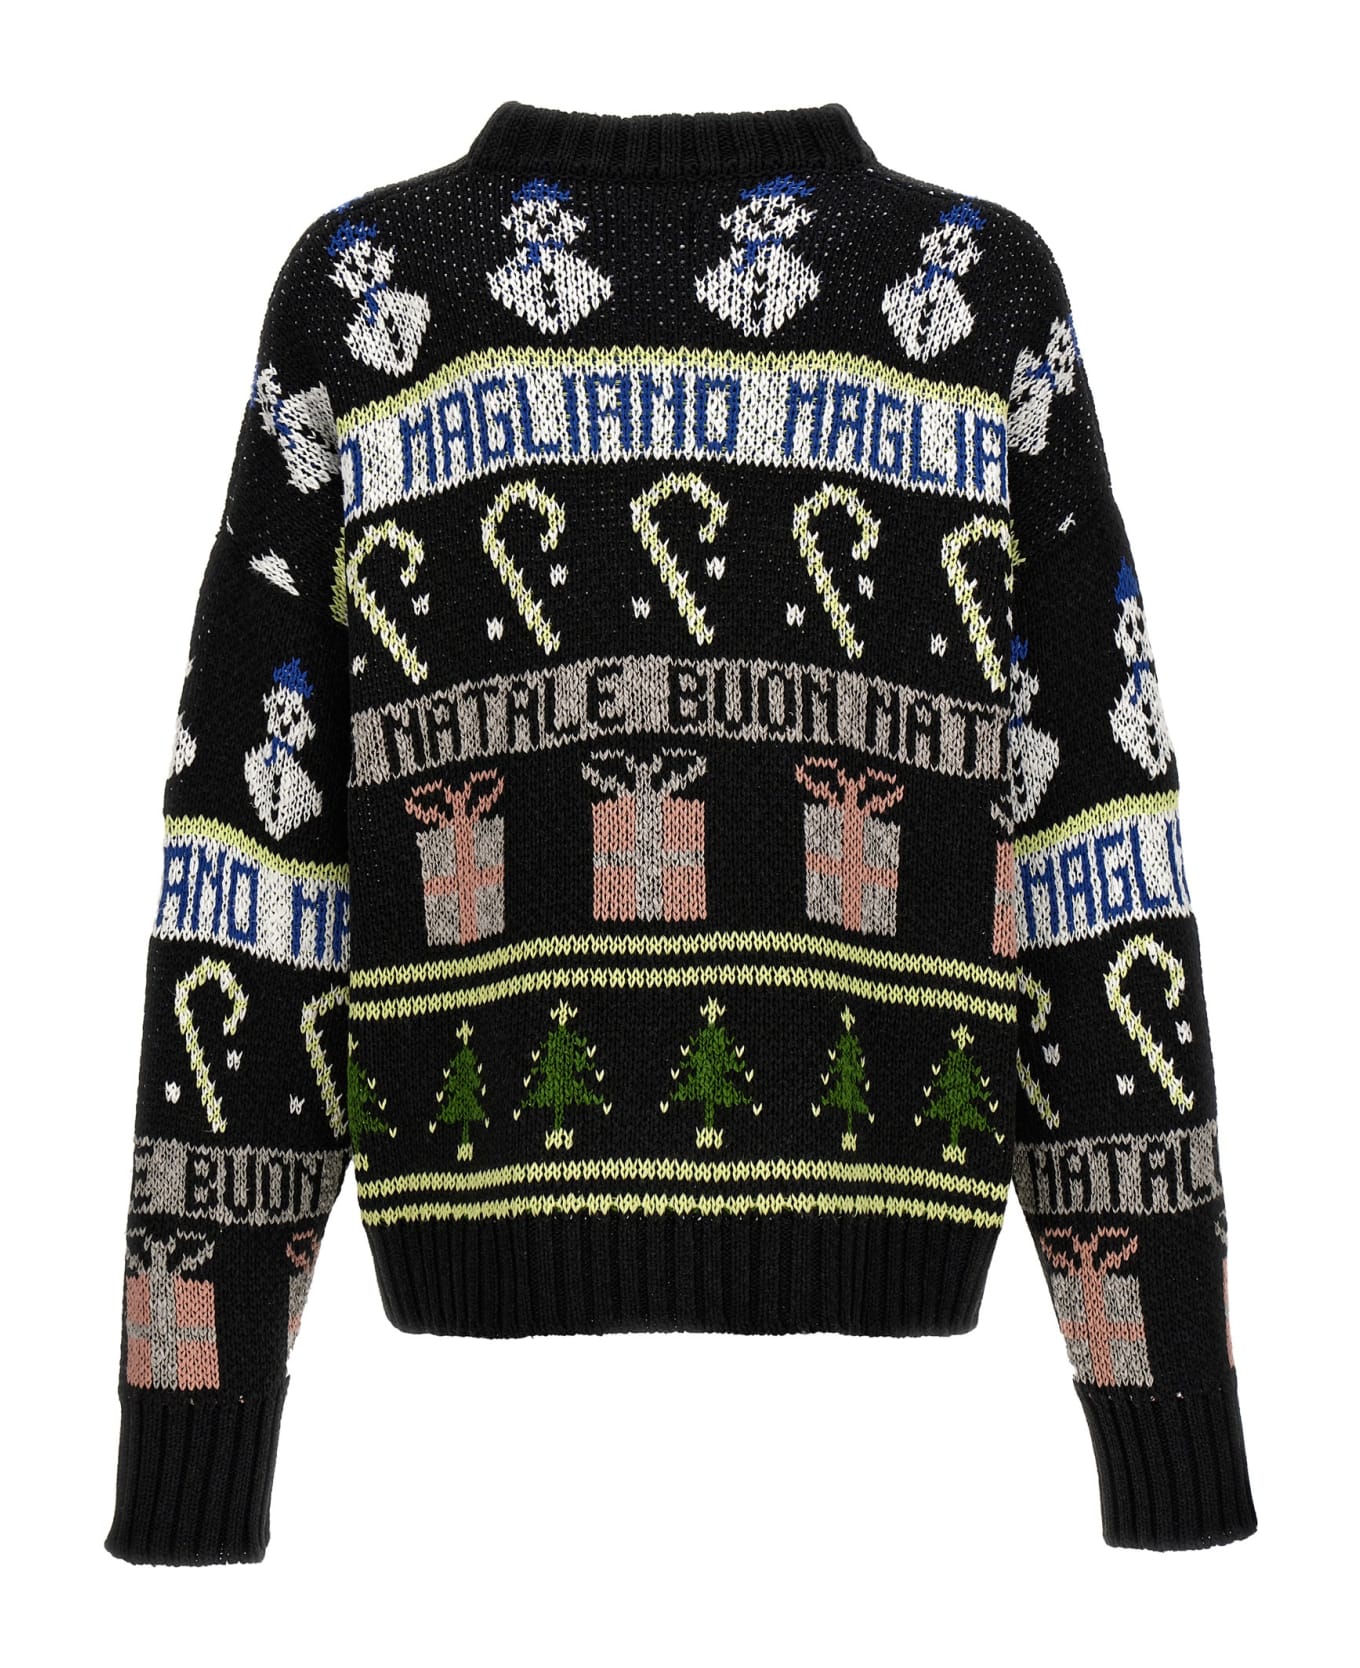 Magliano 'buone Feste' Sweater - Black   ニットウェア